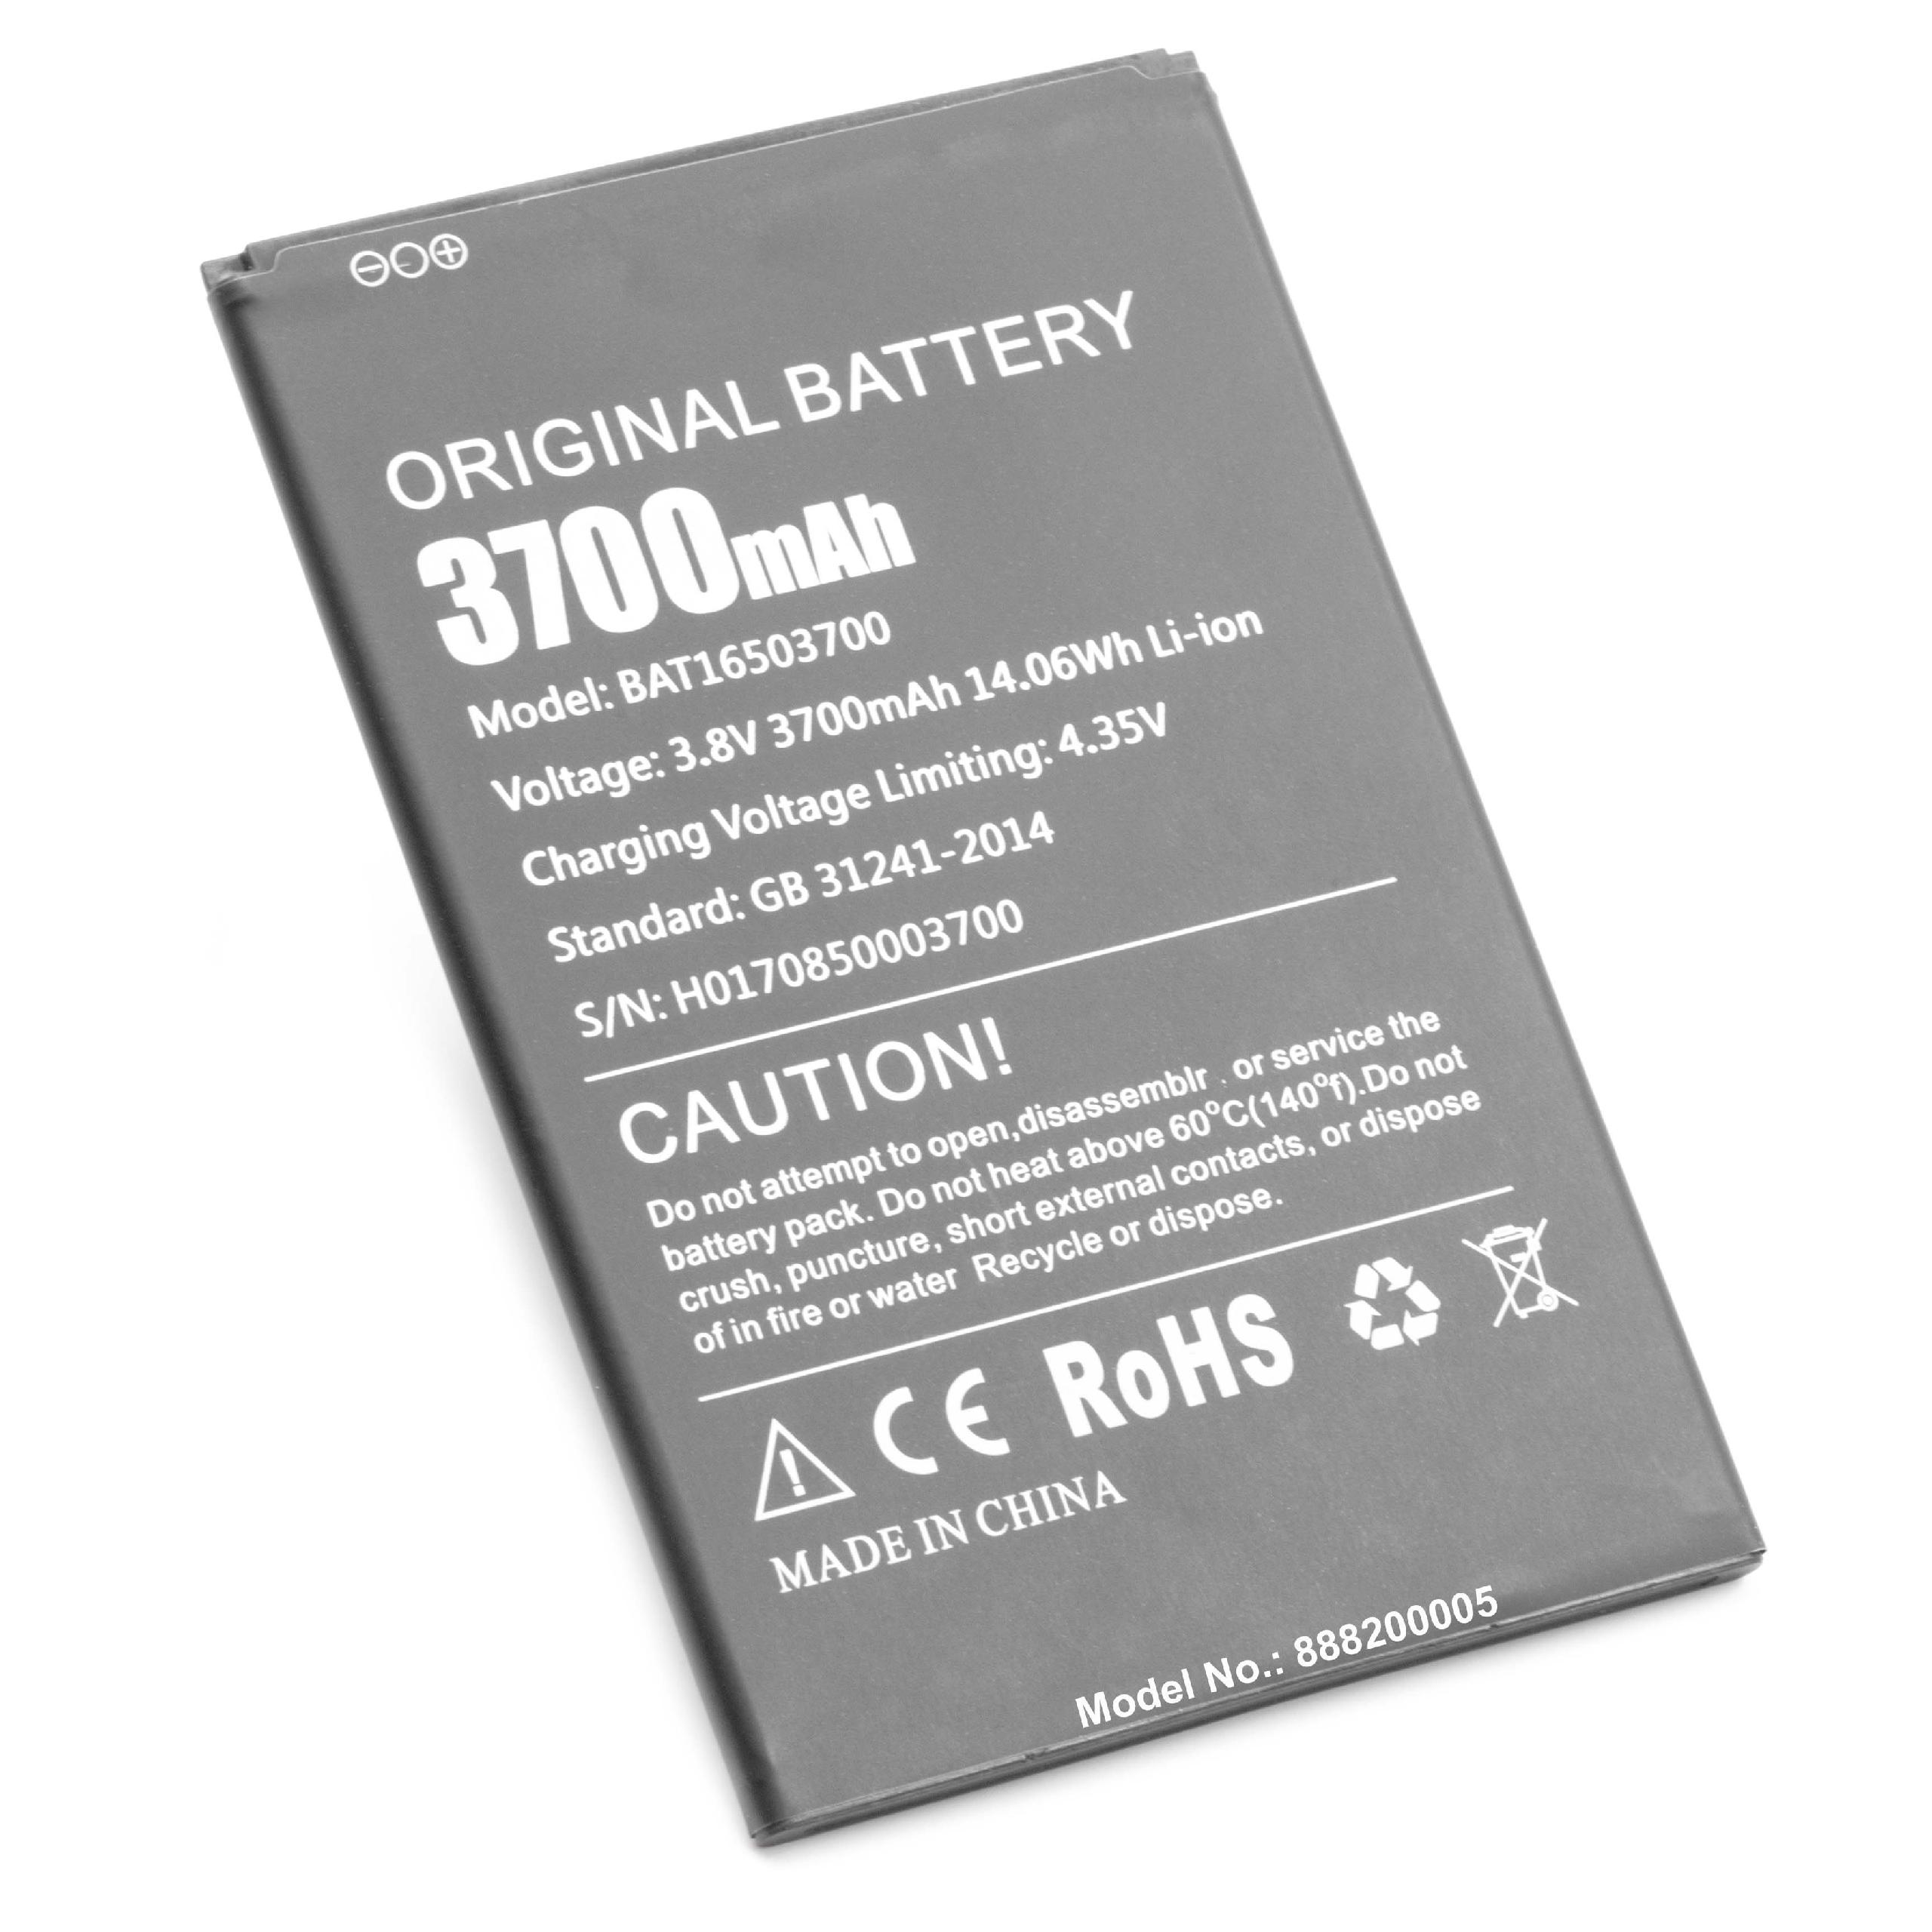 Batteria sostituisce Doogee BAT16503700 per cellulare Doogee - 3700mAh 3,8V Li-Ion